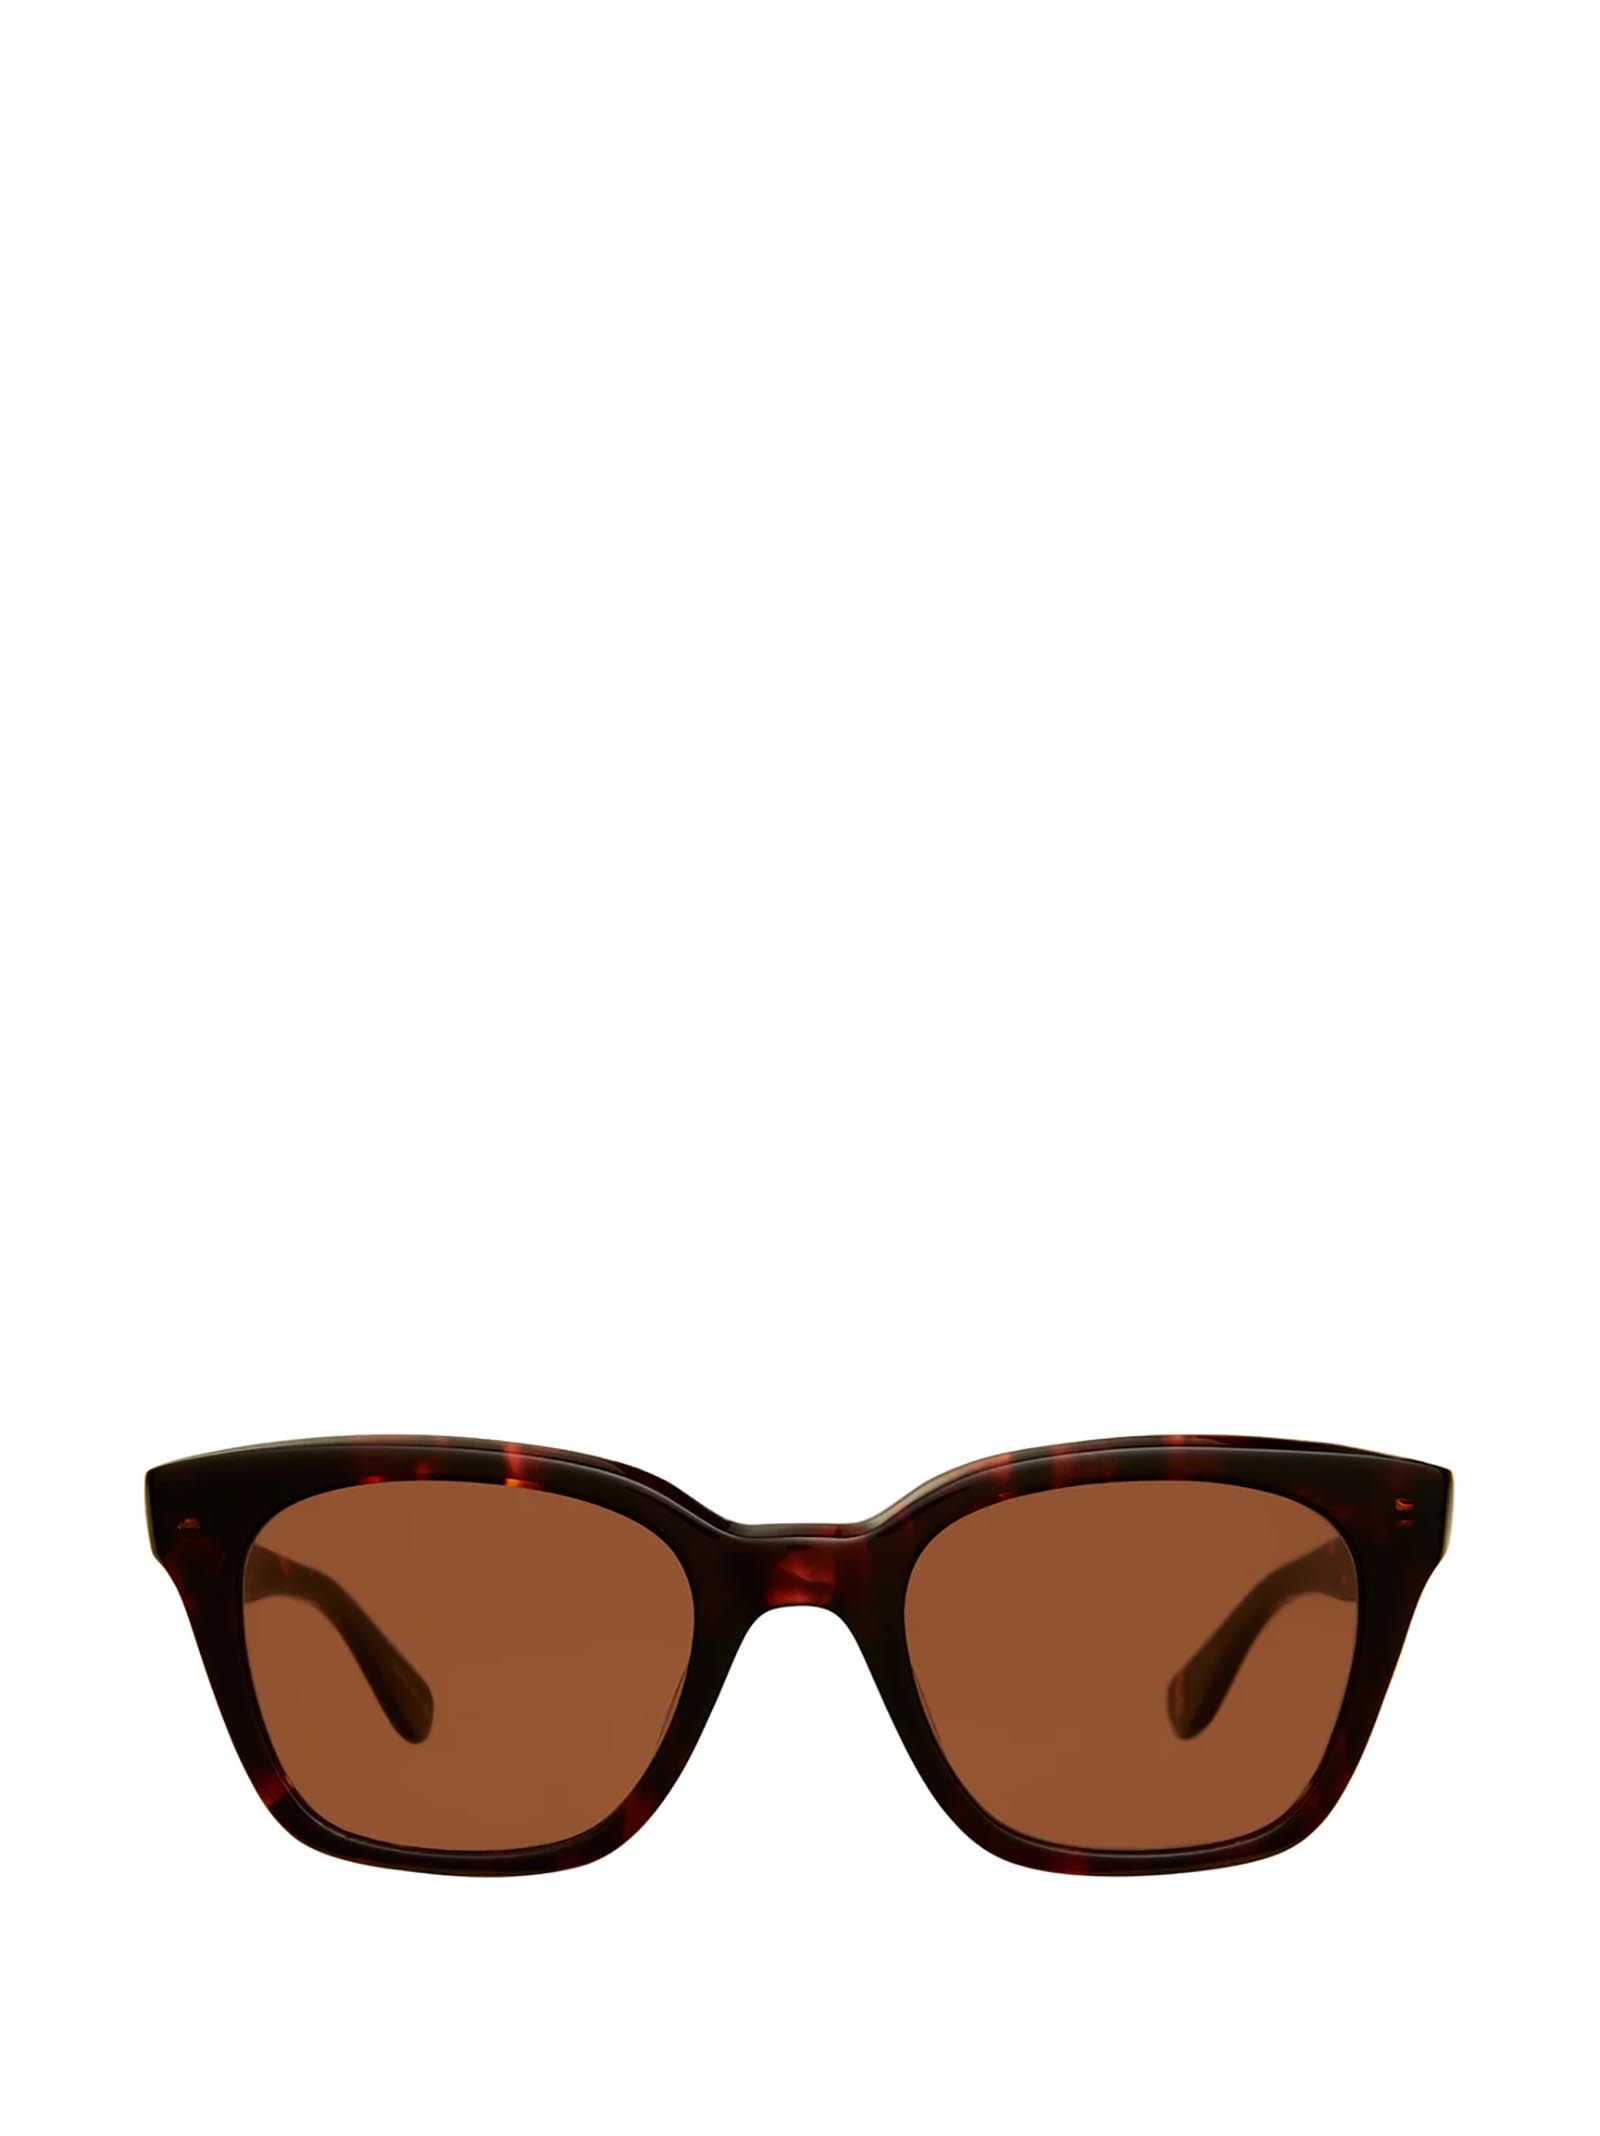 Glco X Clare V. Nouvelle Sun Roux Sunglasses